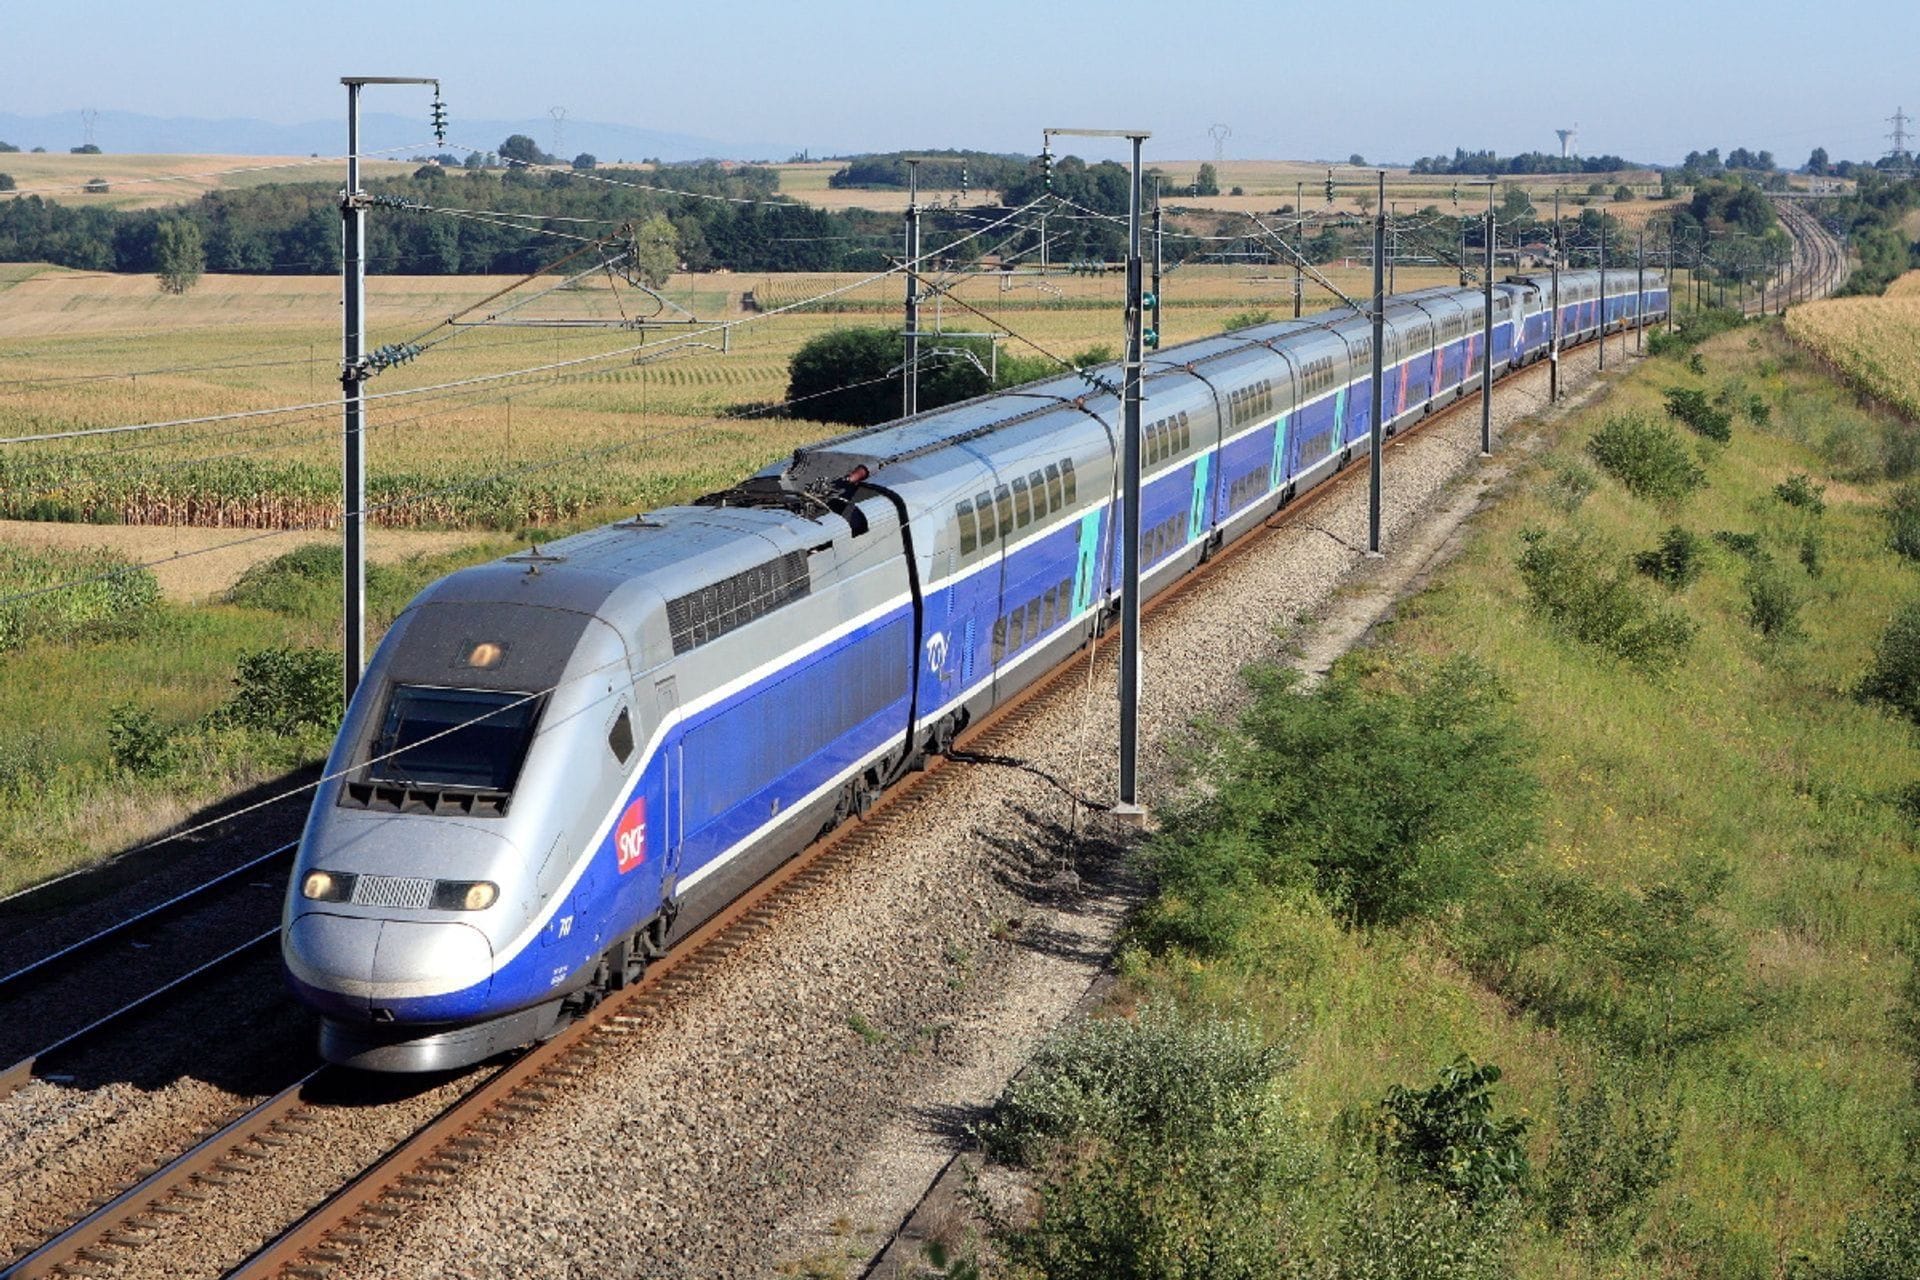 Двухэтажный высокоскоростной поезд TGV серии Duplex в Бургундии Франш-Конте